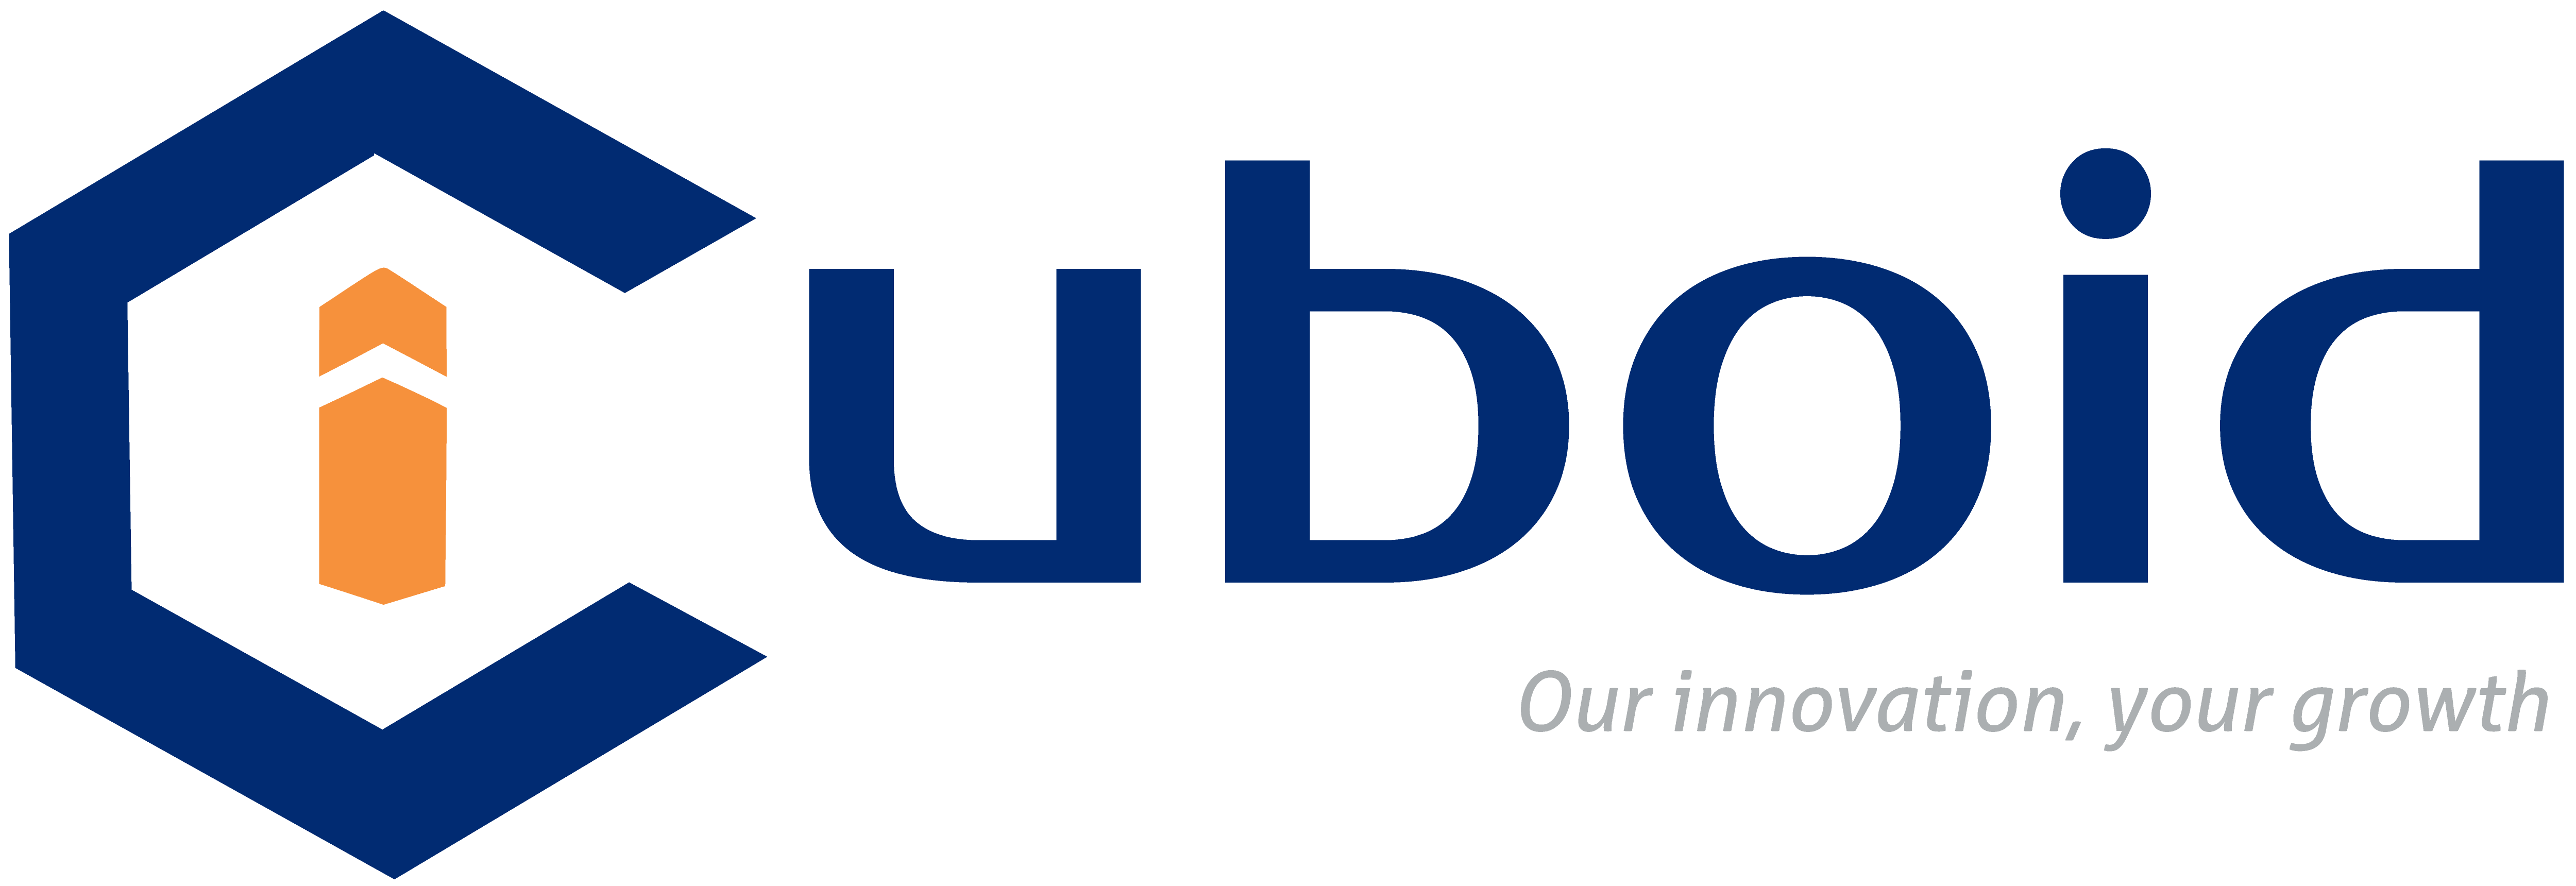 iCuboid logo